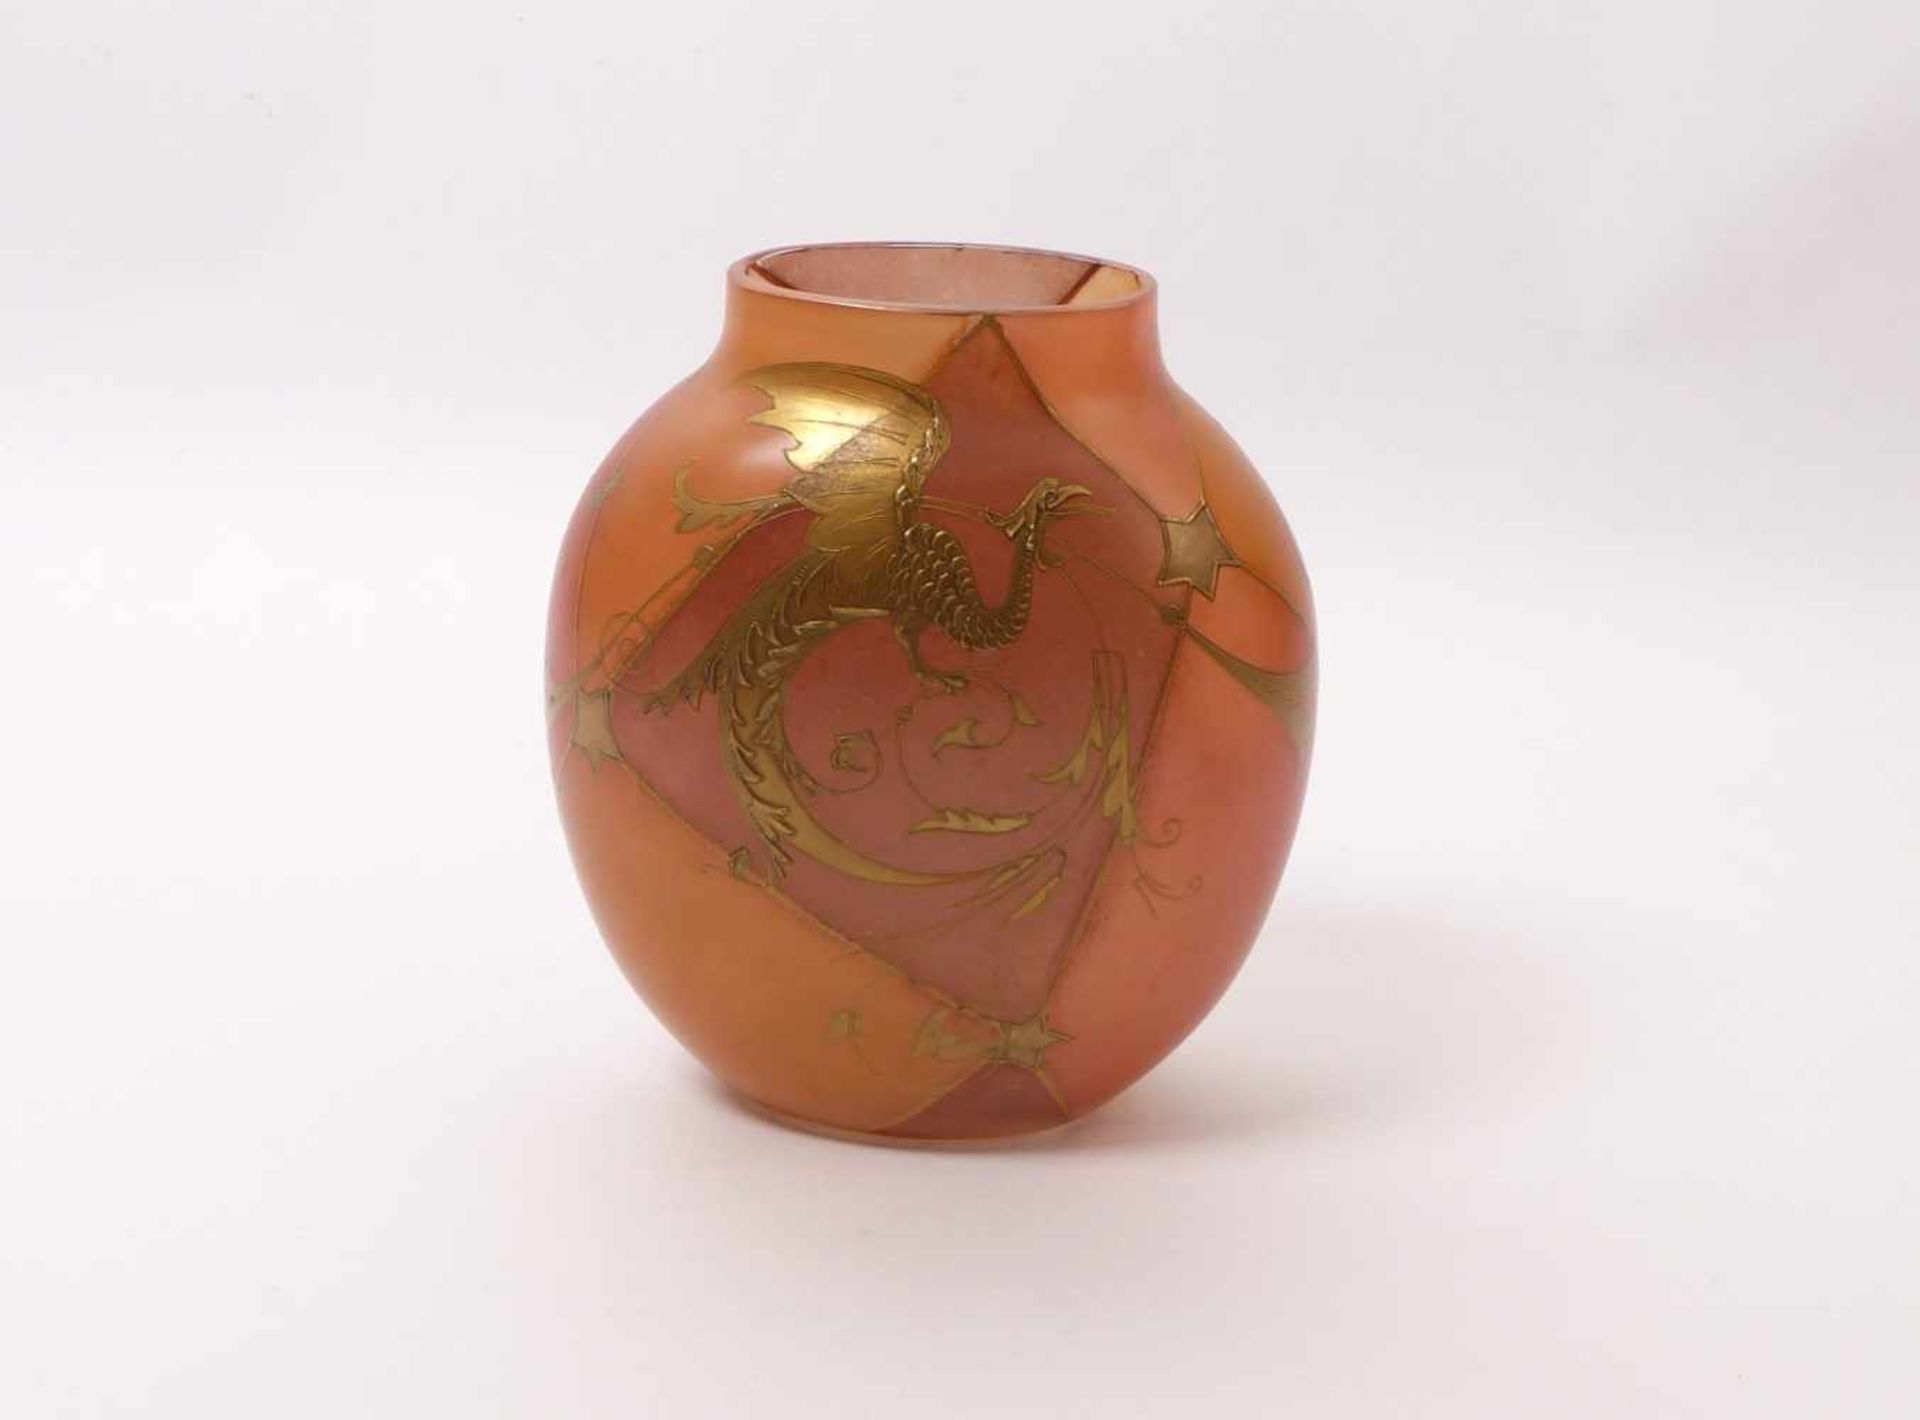 Vase mit DrachenBöhmen, um 1890/95Beidseitig abgeflachter, bauchiger Korpus mit kurzem Hals, Dekor